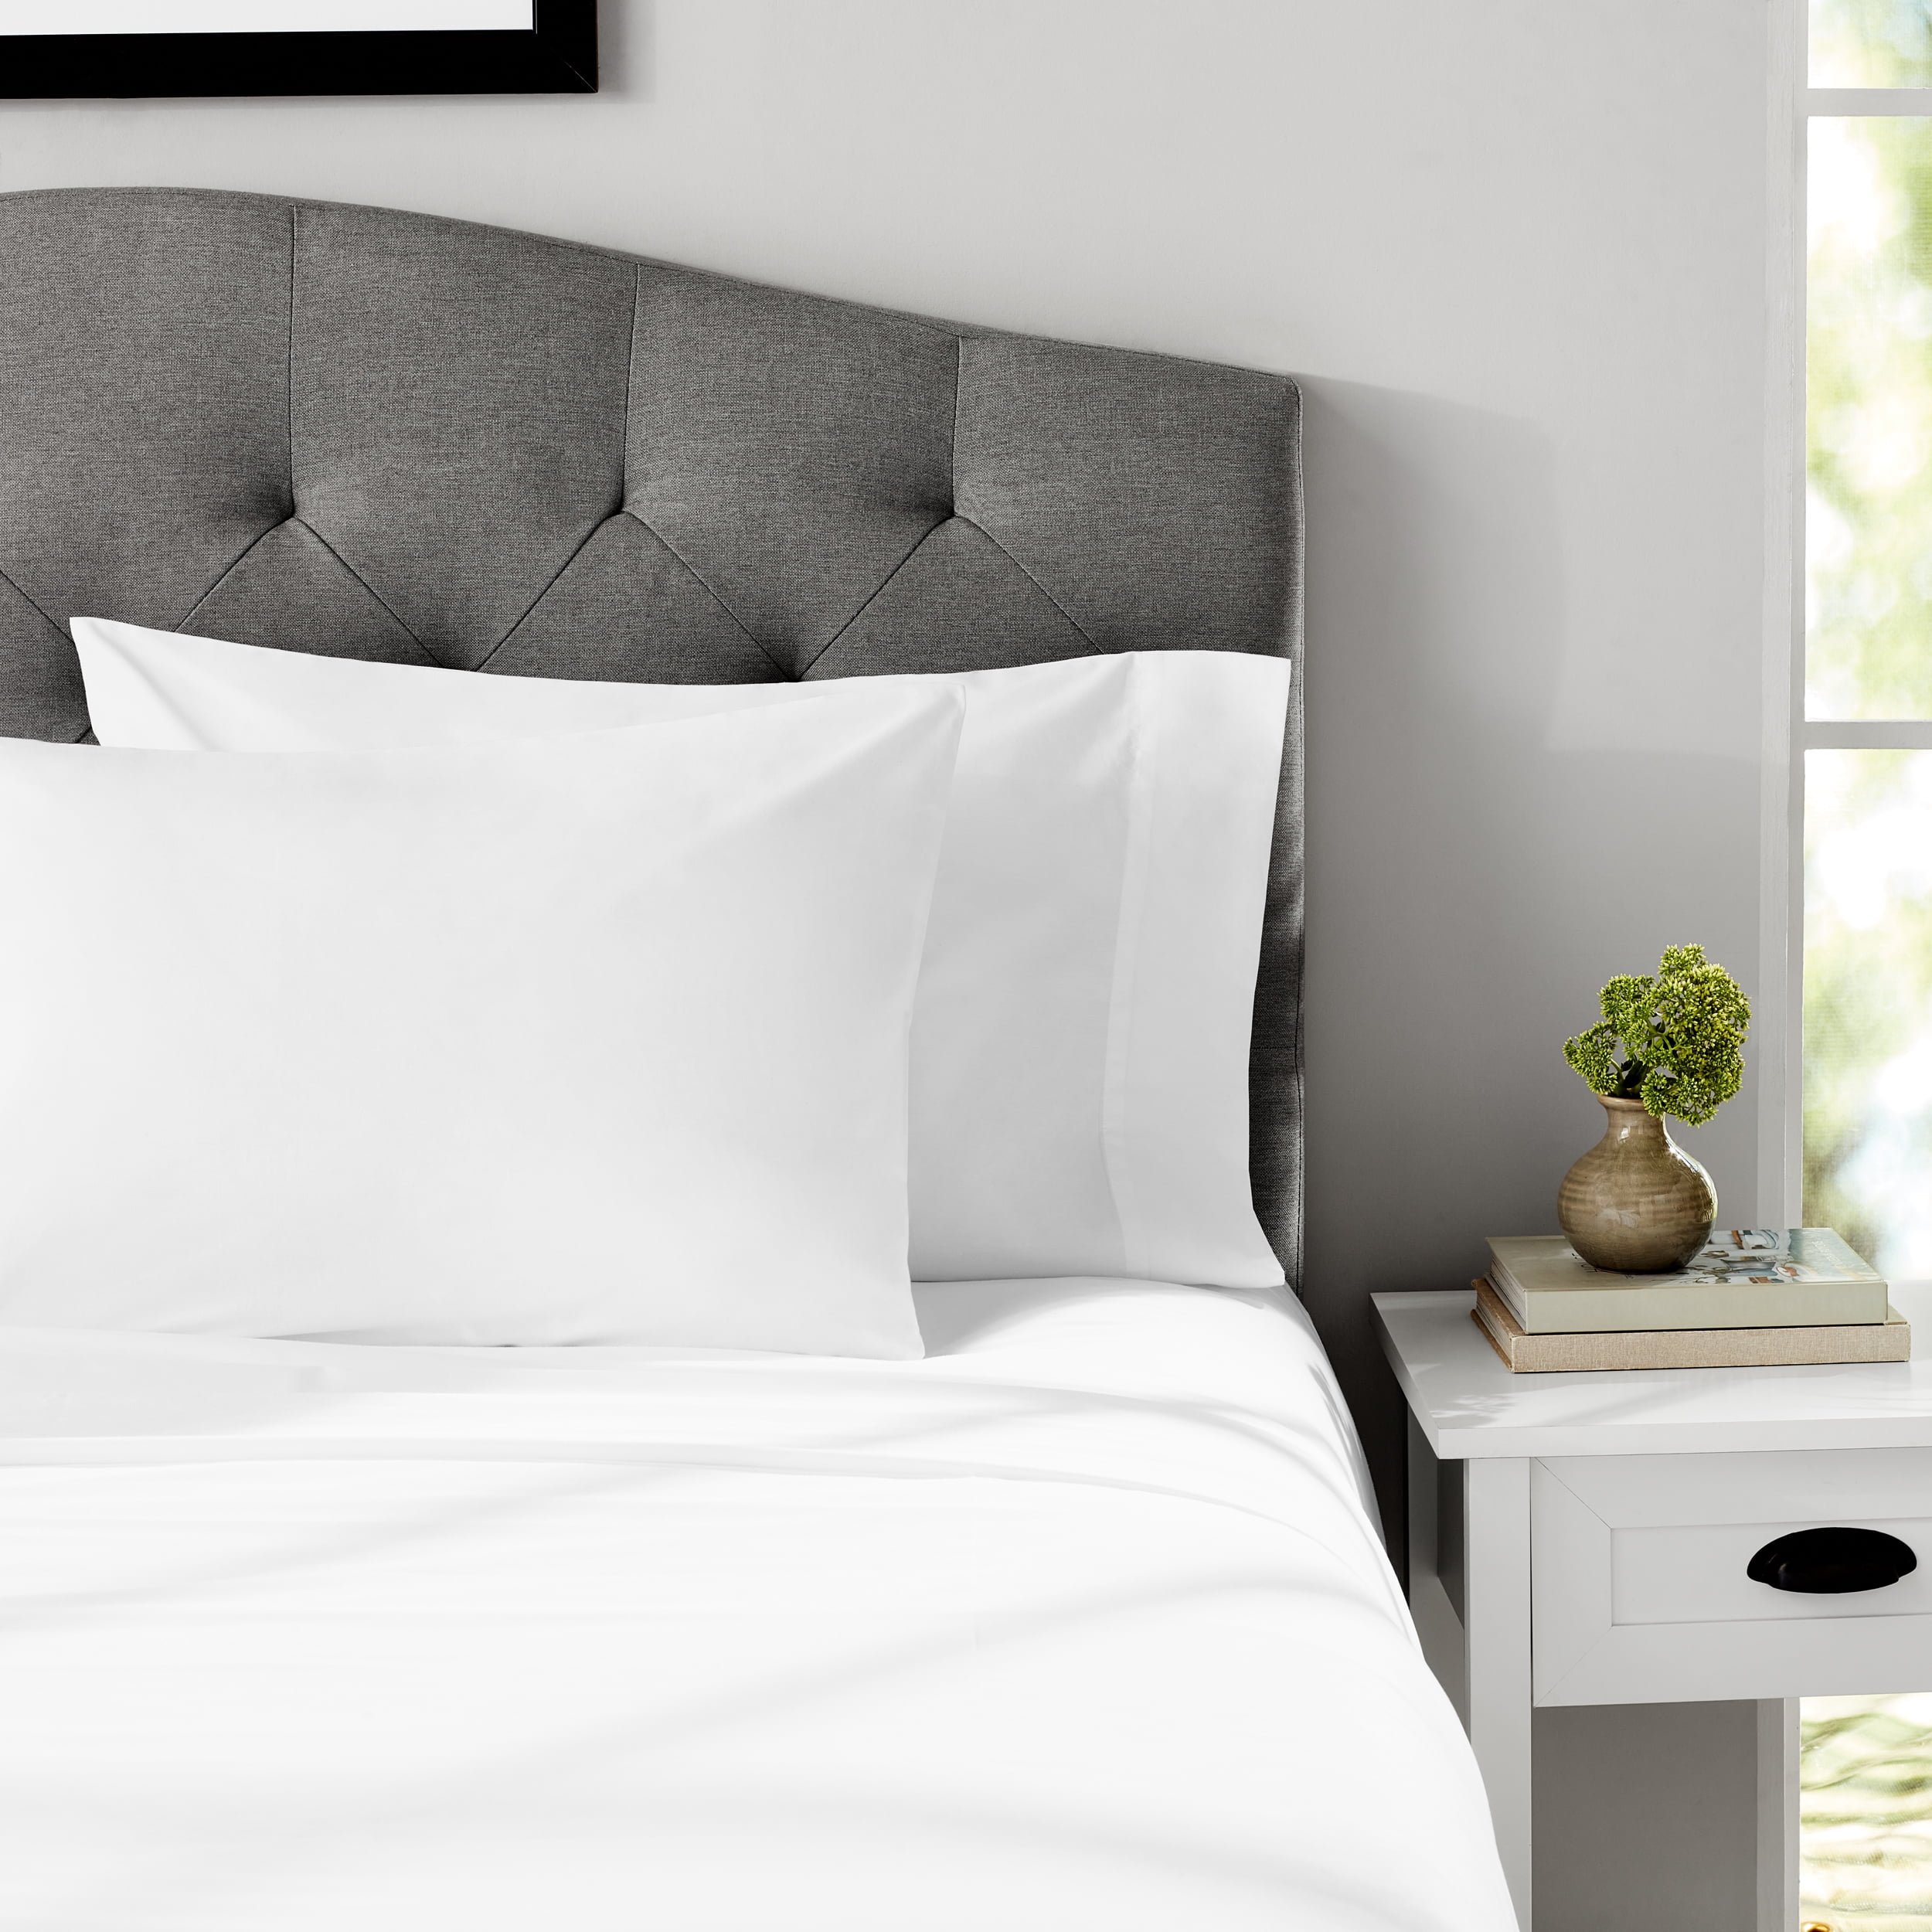 Basics Cotton Jersey 4-Piece Bed Sheet Set, Queen, Light Gray, Solid